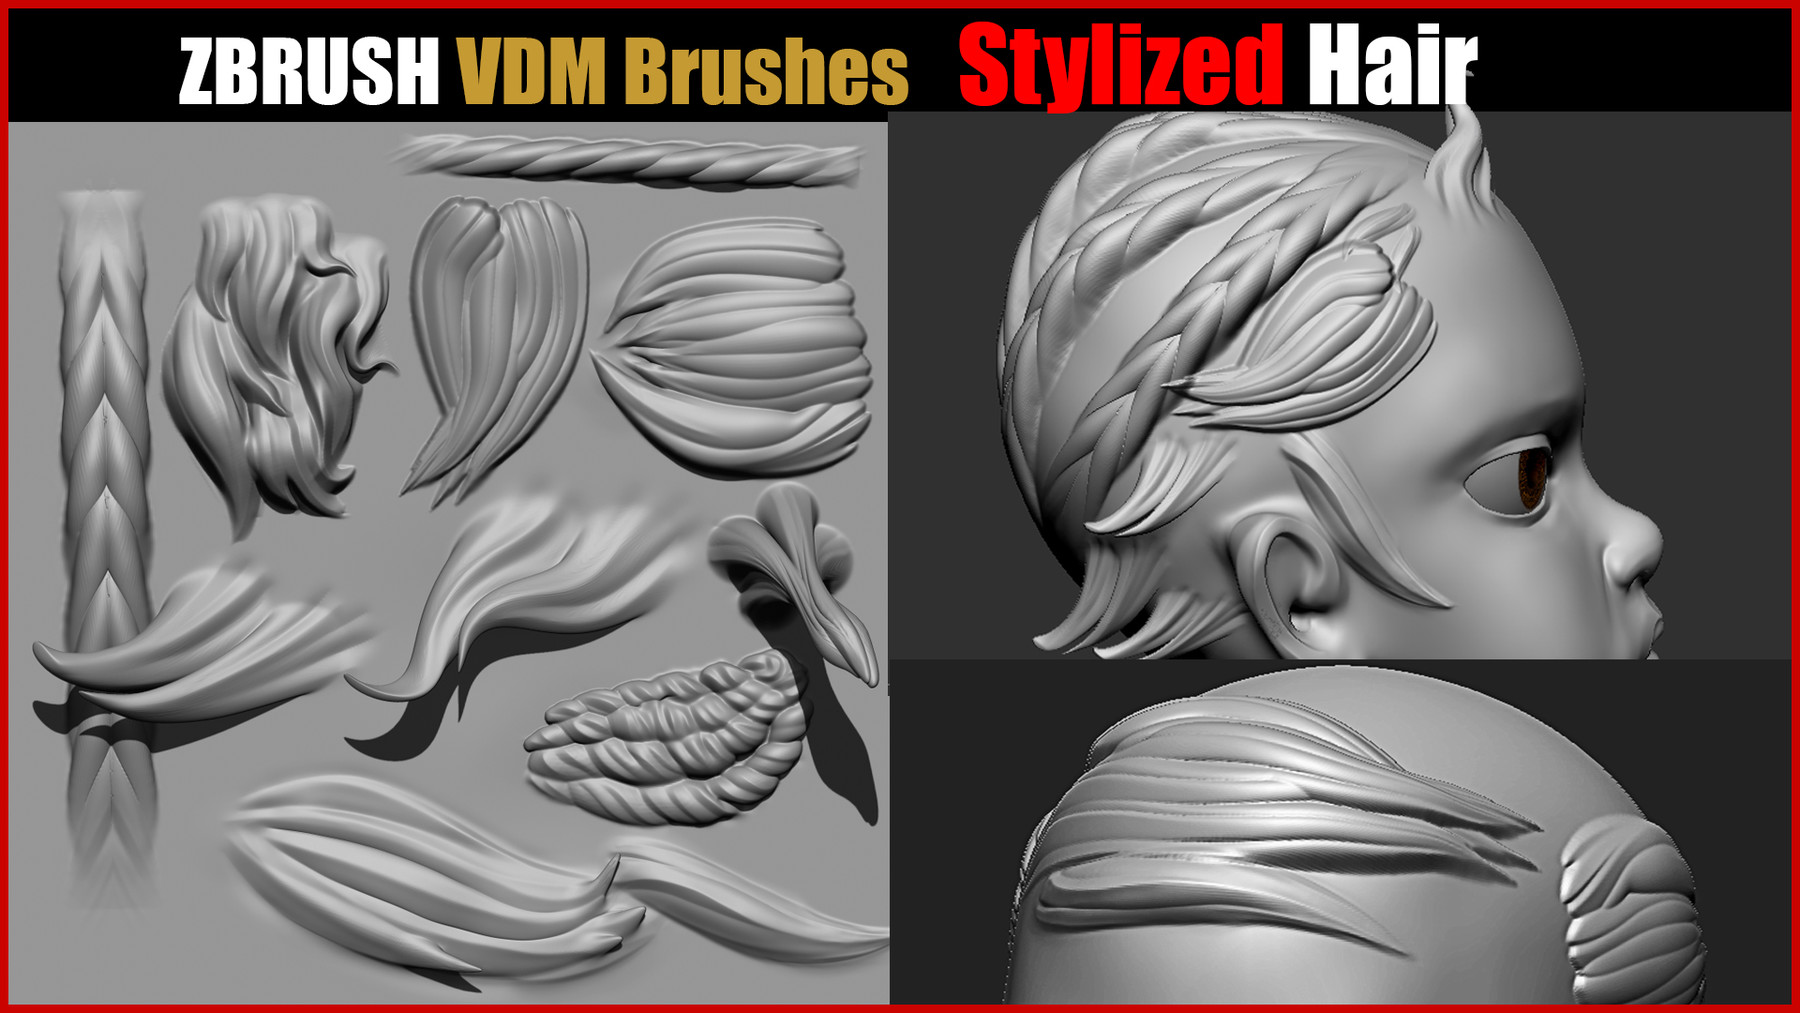 stylized hair brush zbrush